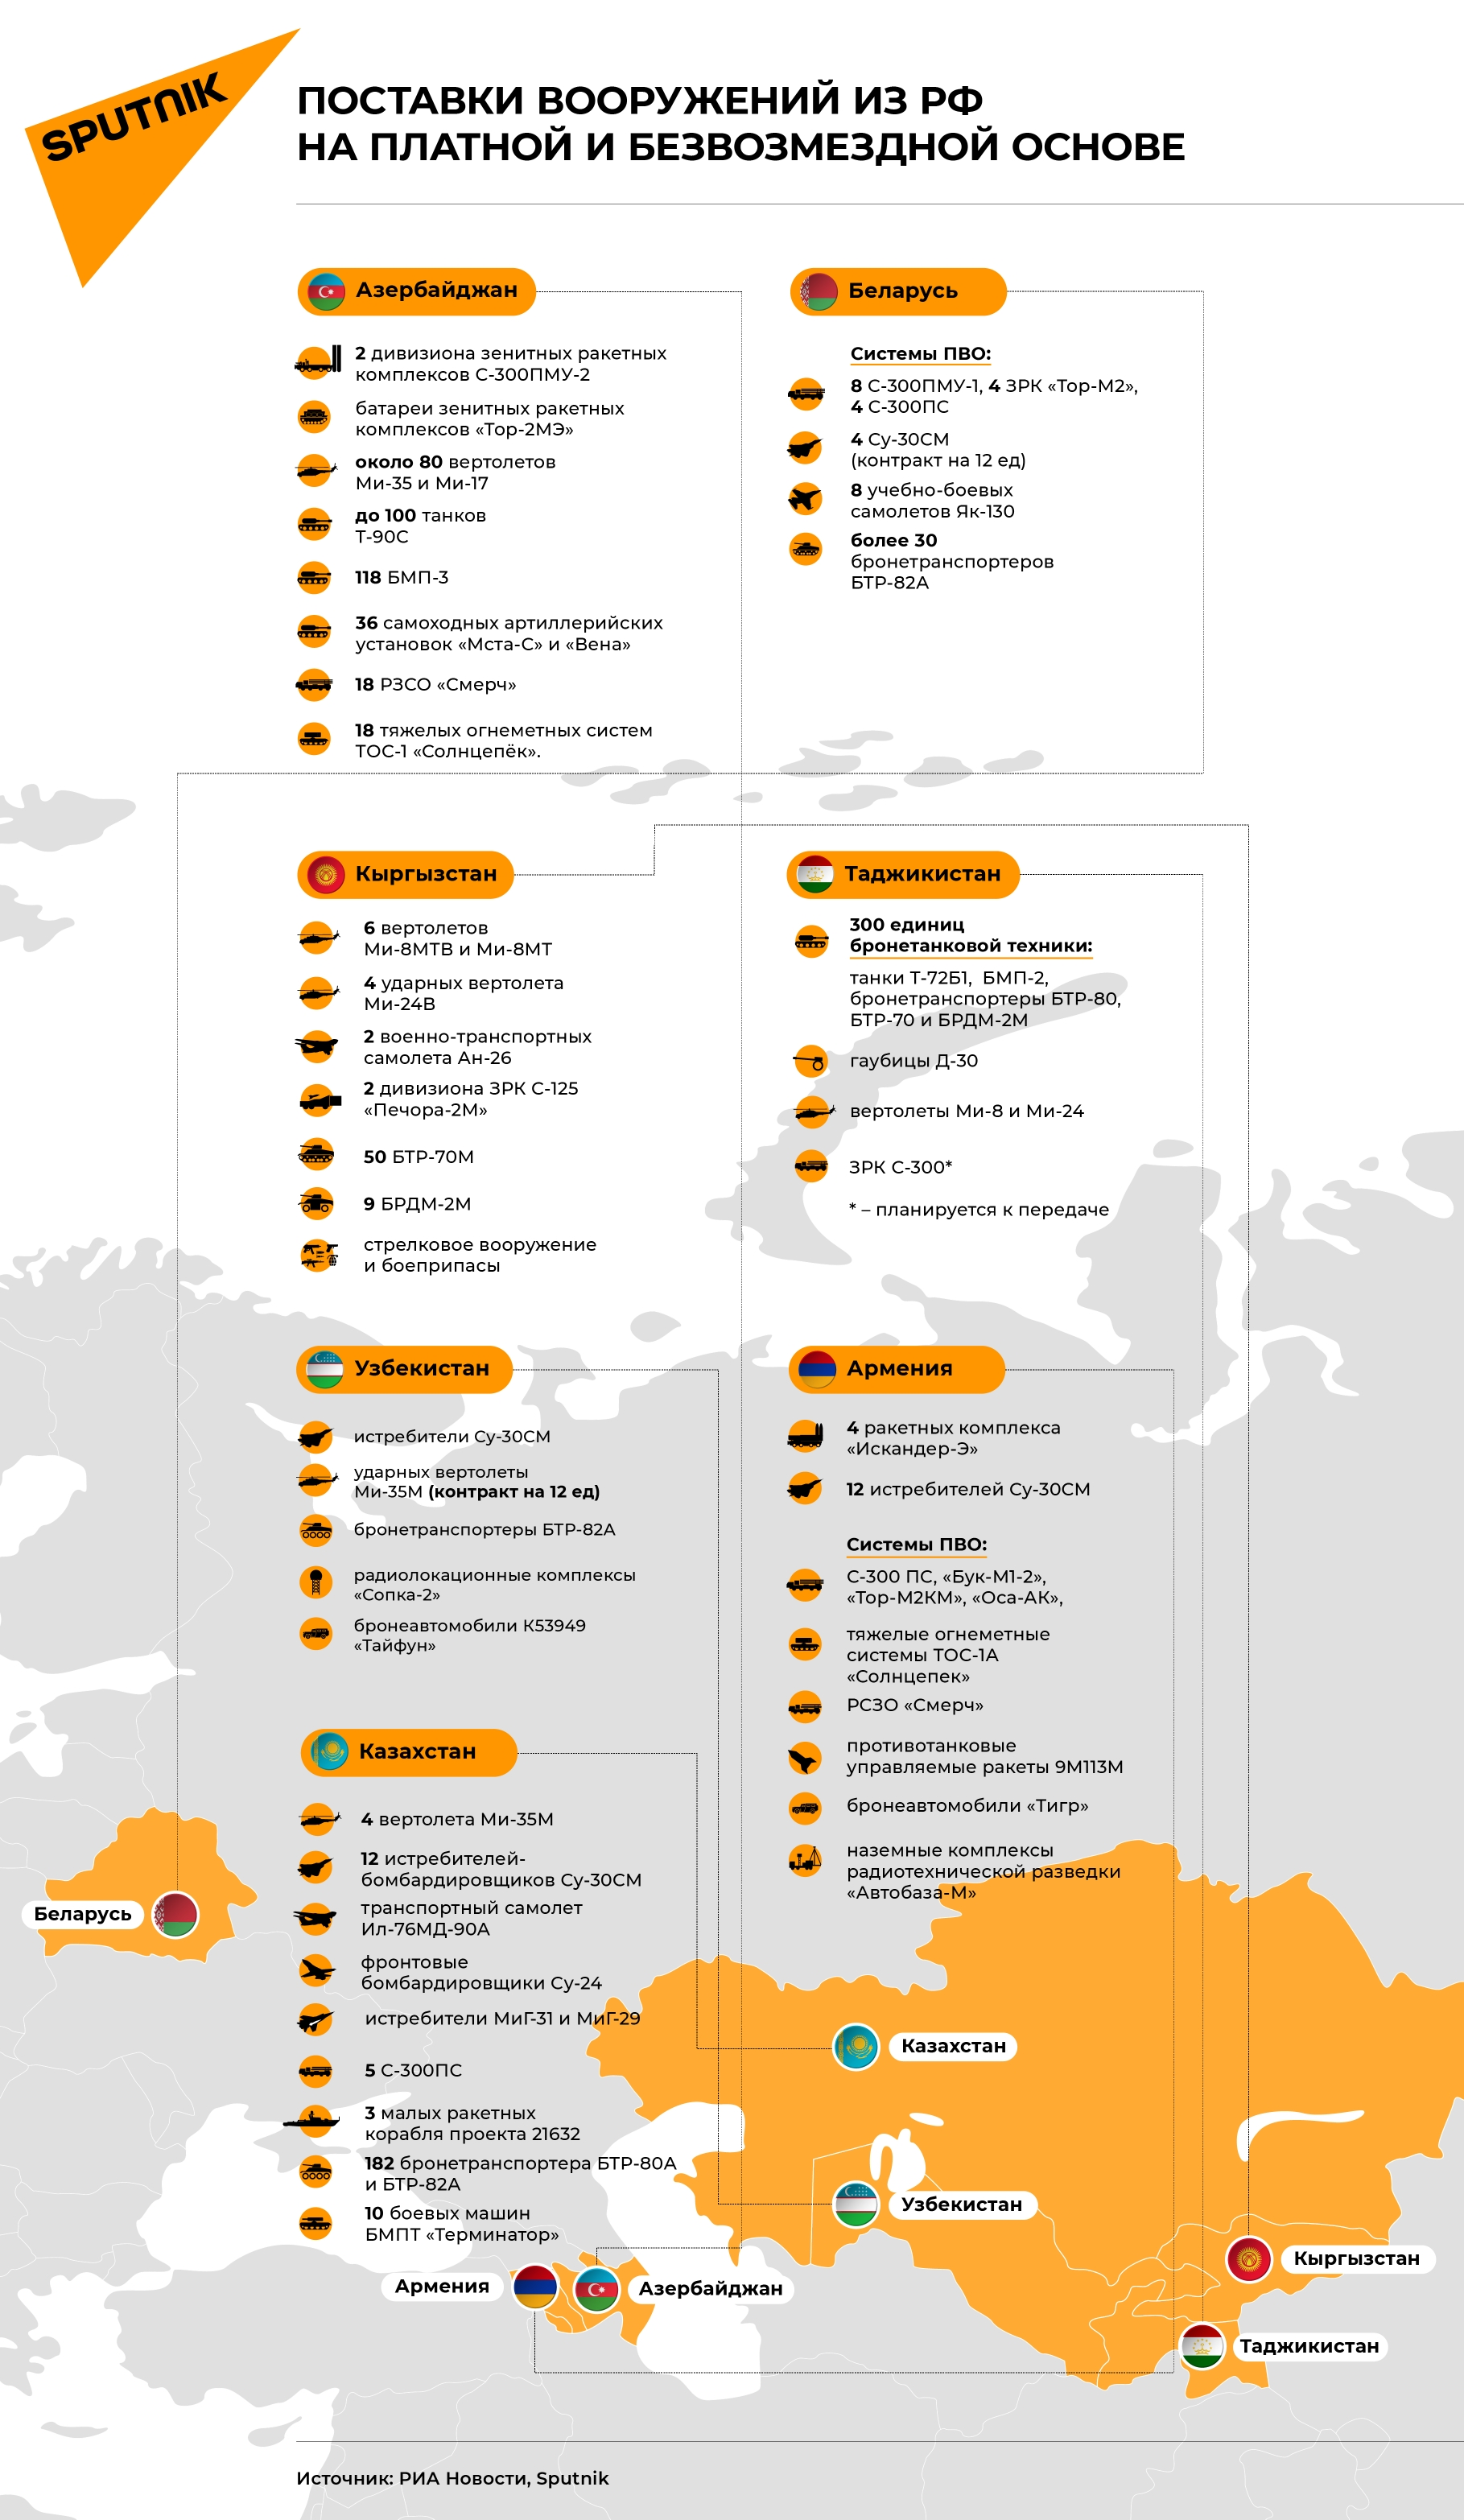 Инфографика: Какое оружие Россия поставляет в страны СНГ - Sputnik Азербайджан